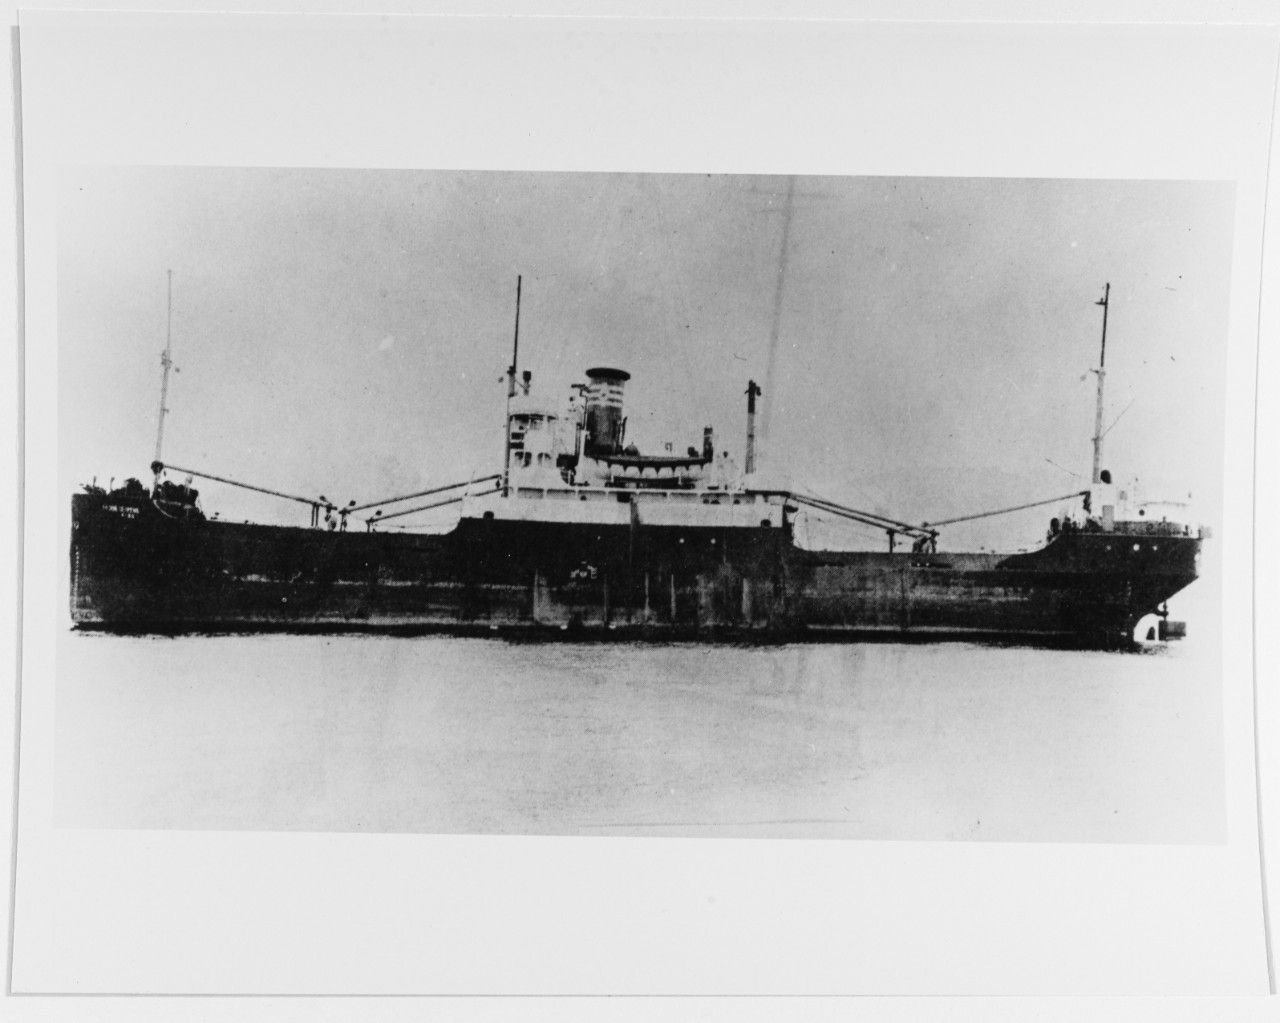 USS SERPENS (AK-266)